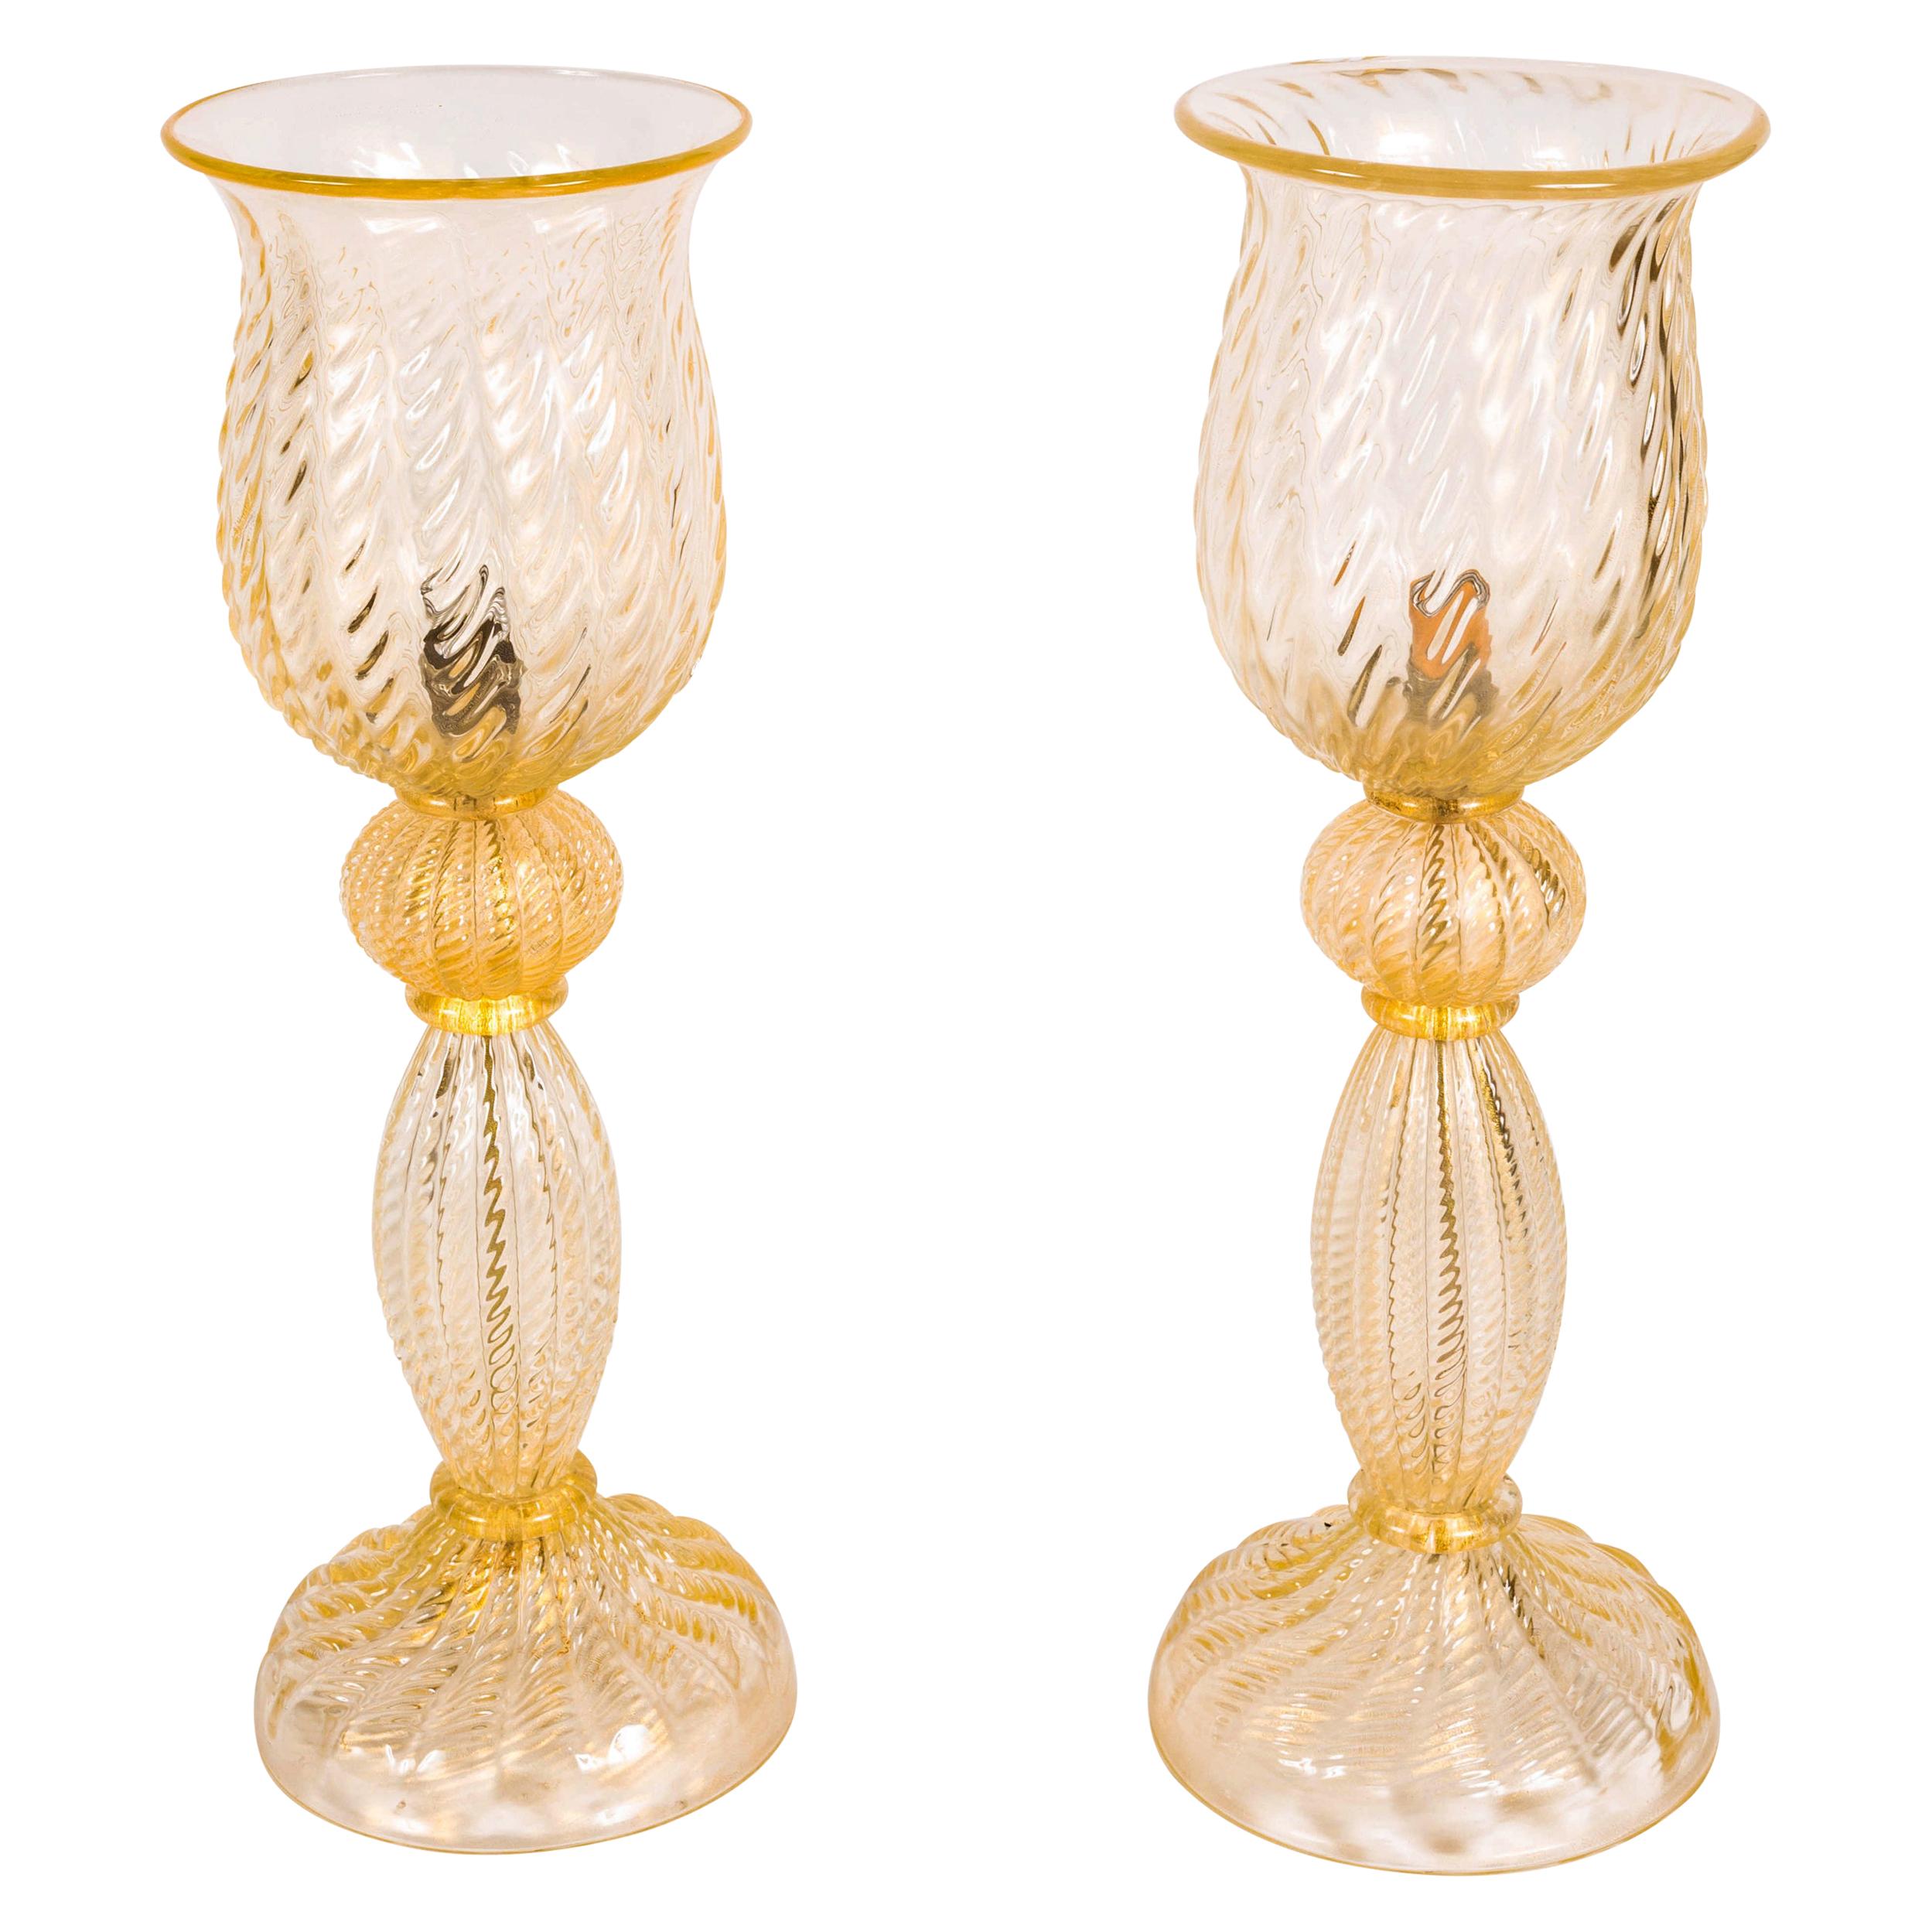 Grand Scale Avventurina Murano Glass Lamps, Pair